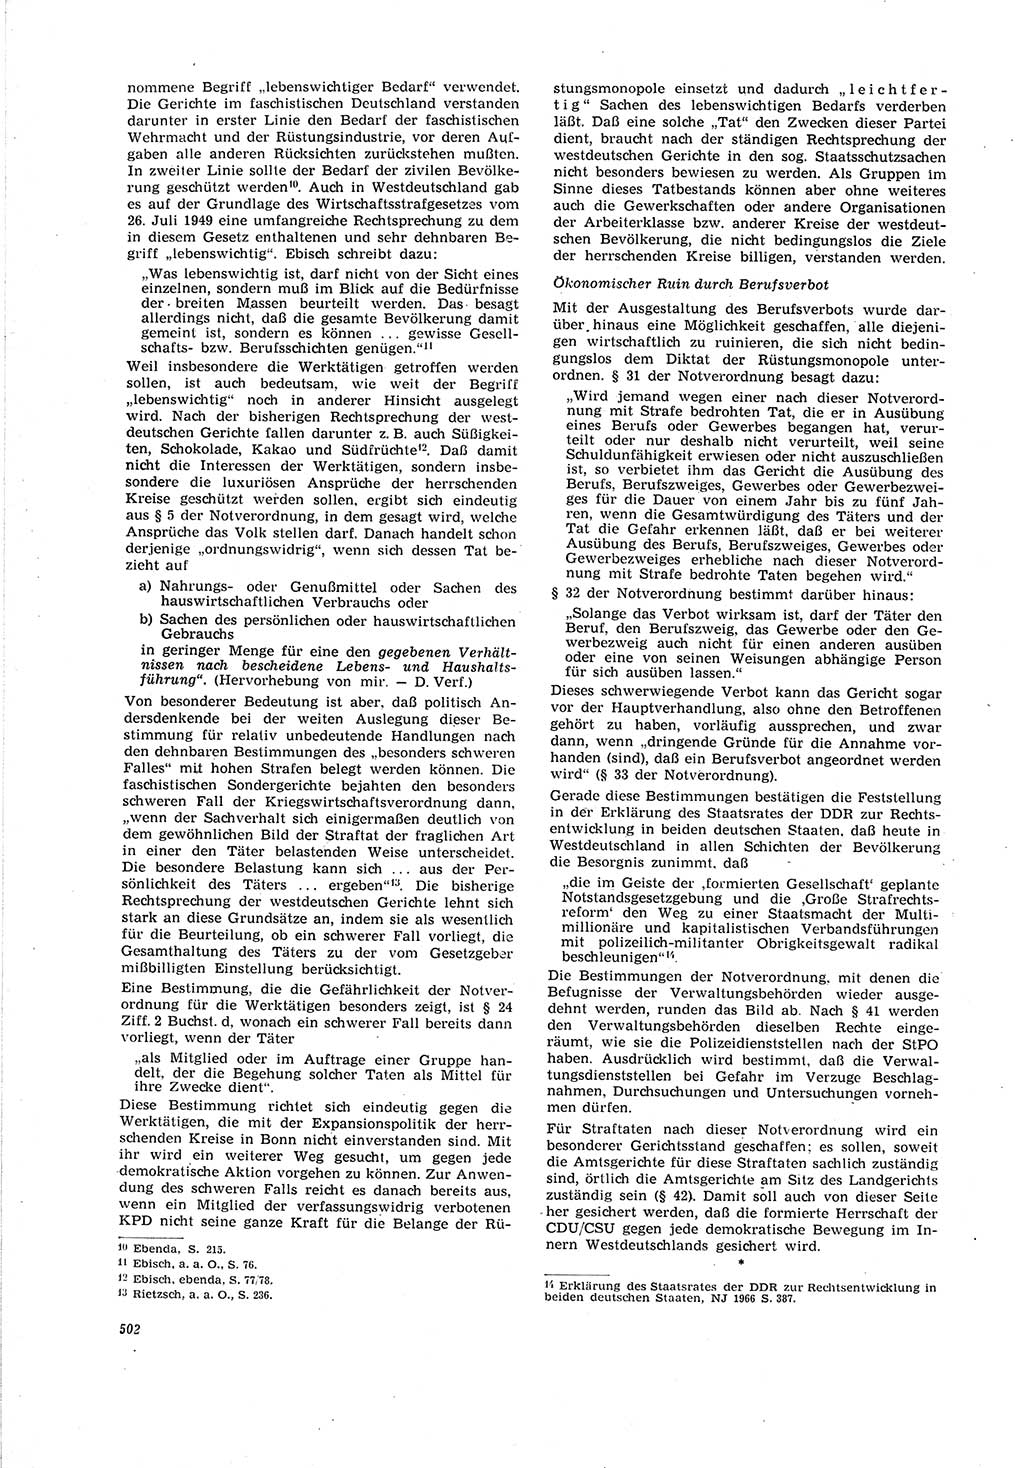 Neue Justiz (NJ), Zeitschrift für Recht und Rechtswissenschaft [Deutsche Demokratische Republik (DDR)], 20. Jahrgang 1966, Seite 502 (NJ DDR 1966, S. 502)